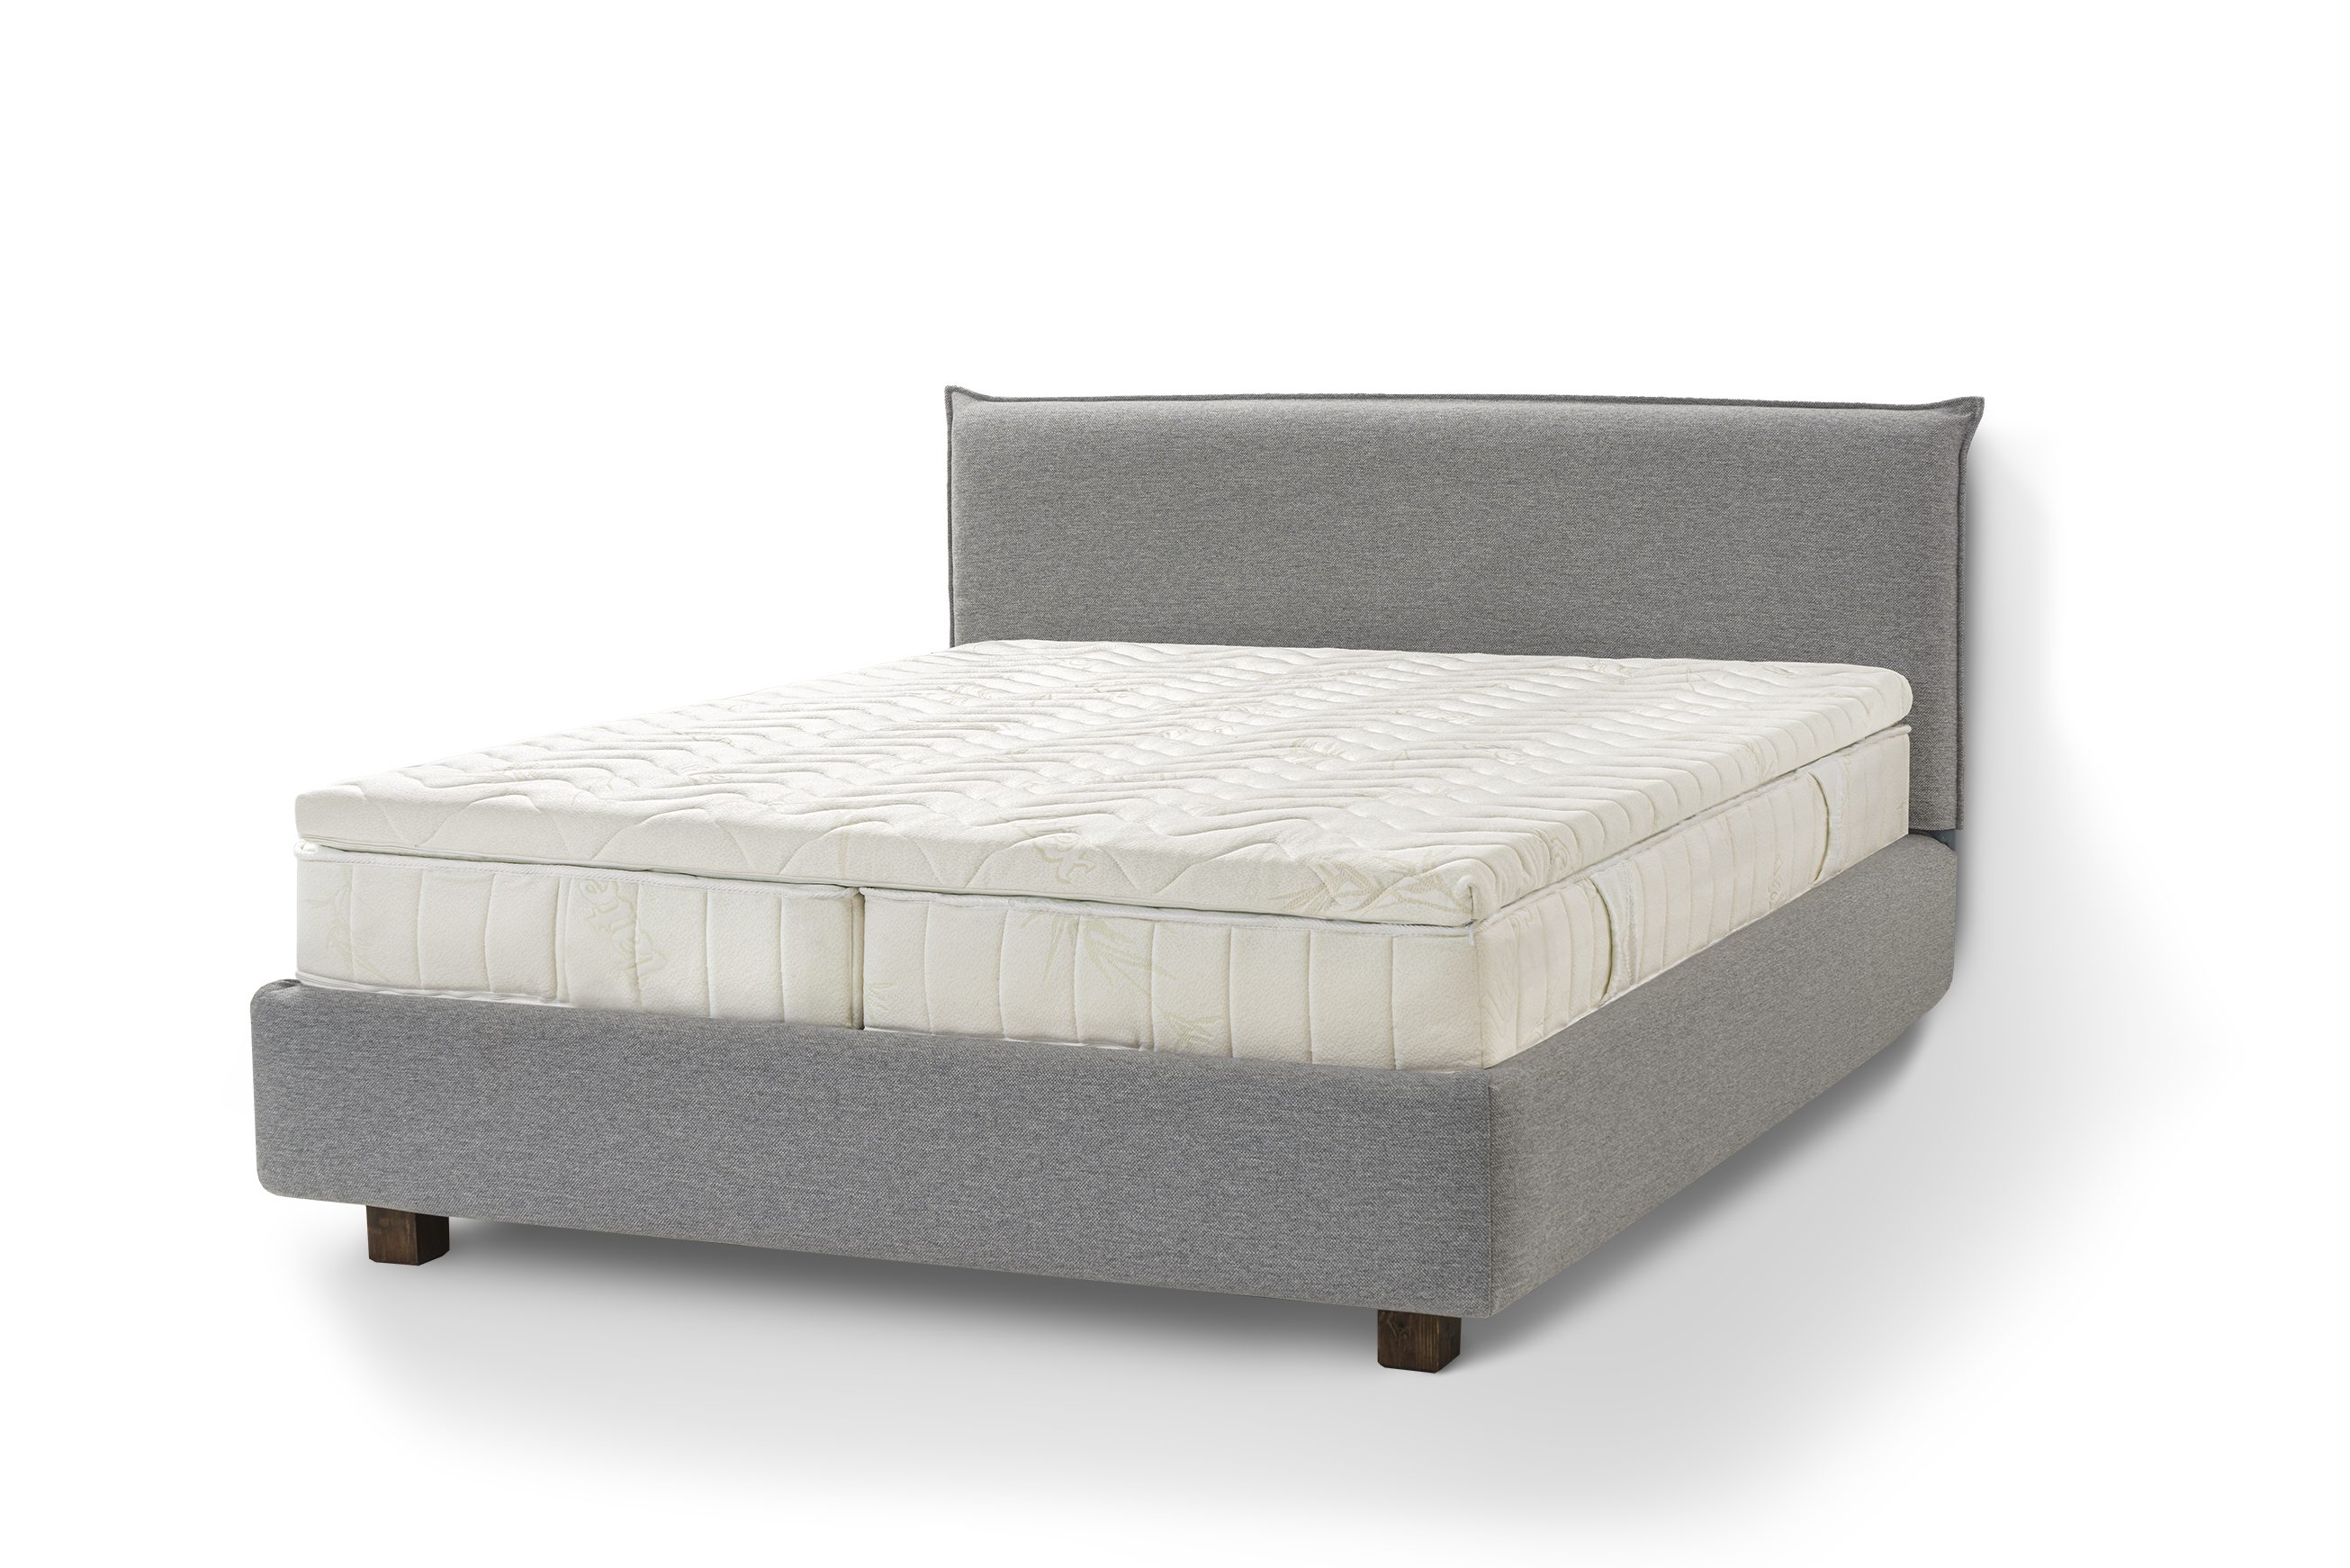 Letti Moderni Holzbett Bett Puro, hergestellt aus hochwertigem Massivholz Siena Gray